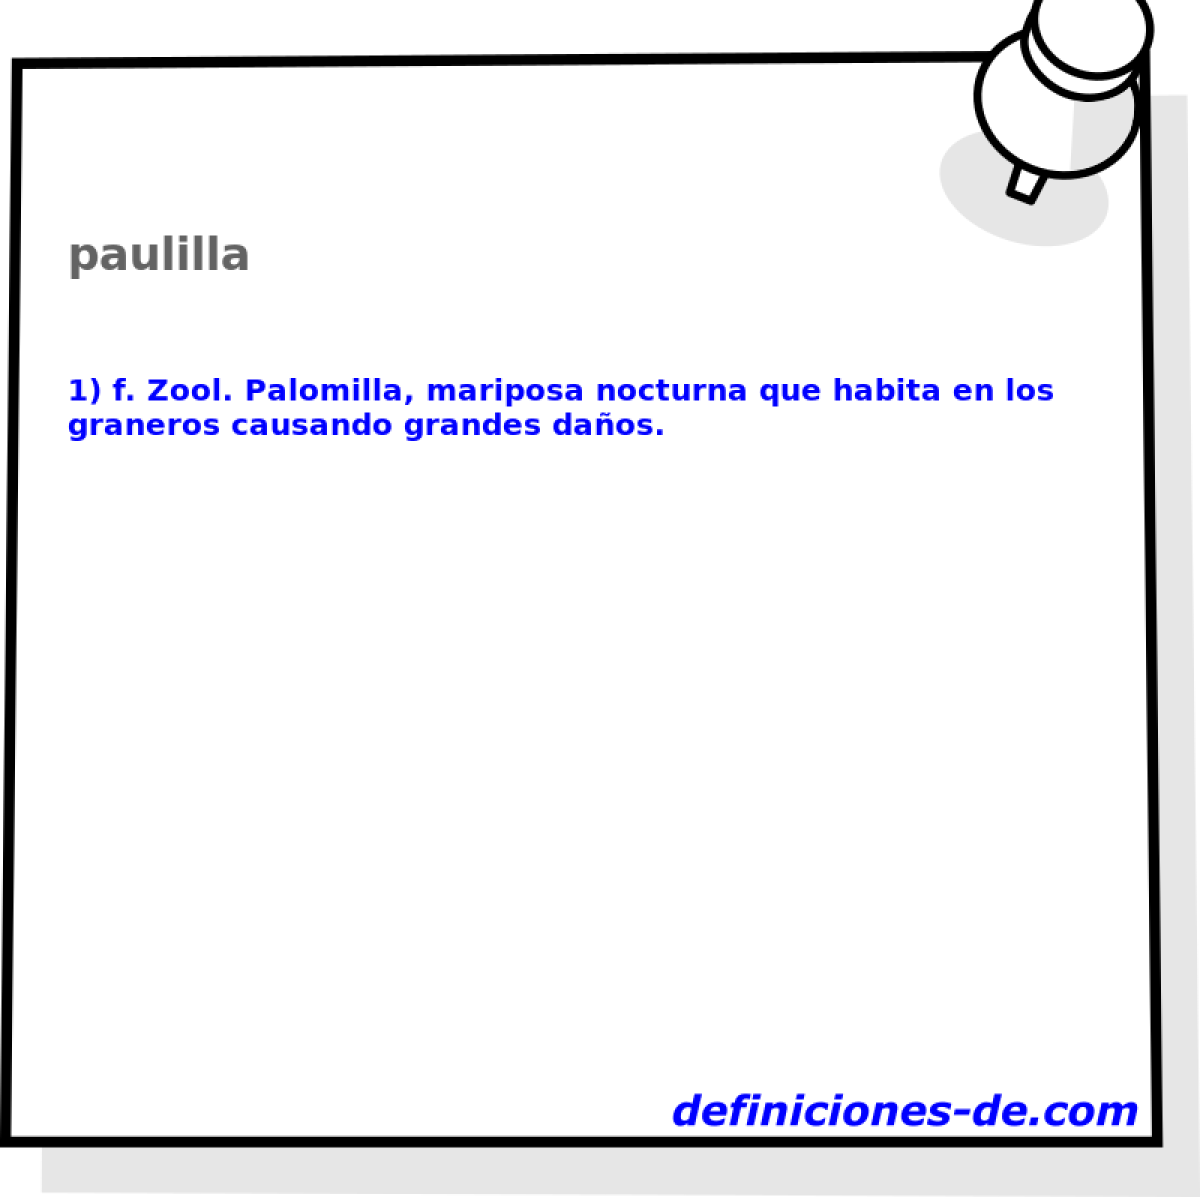 paulilla 